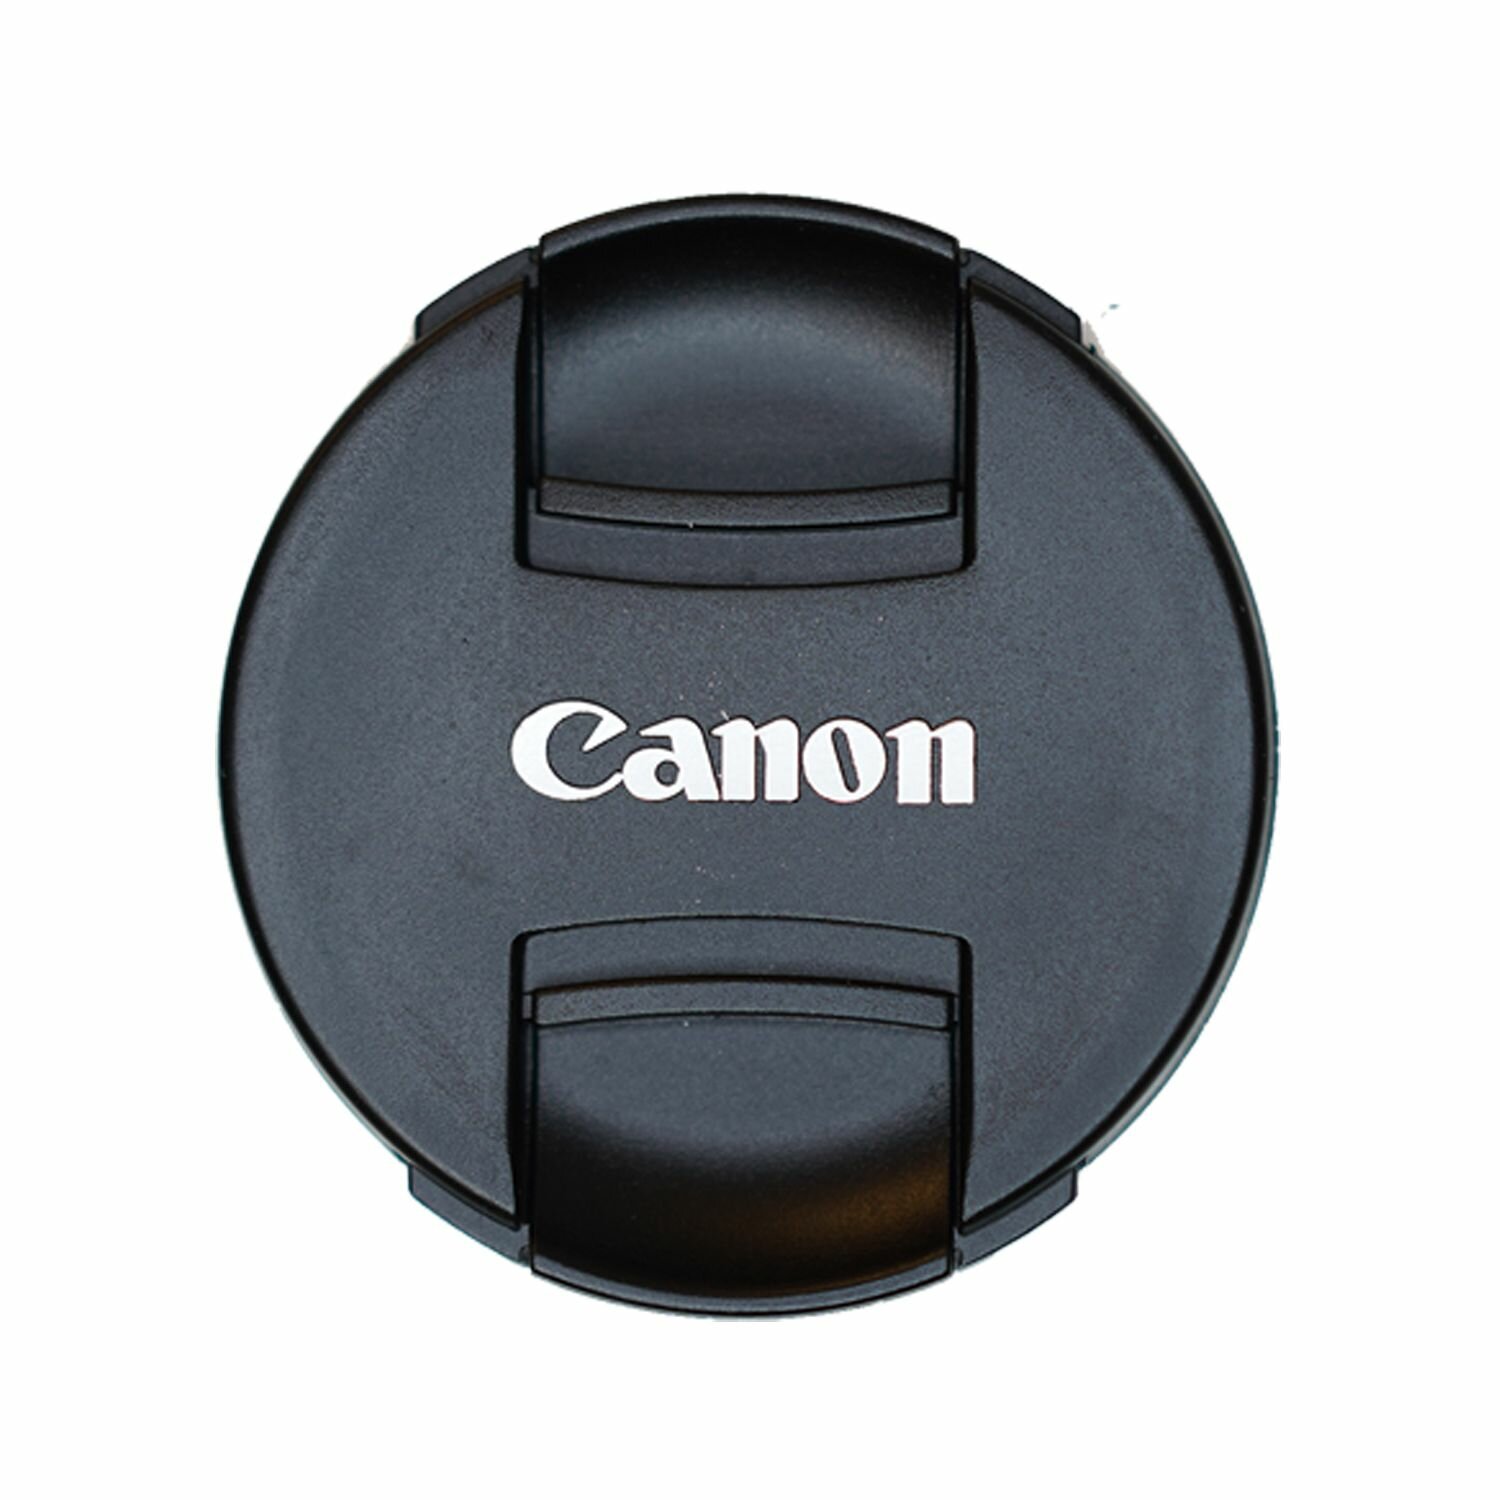 Защитная крышка 62 мм для объектива с надписью "Canon"